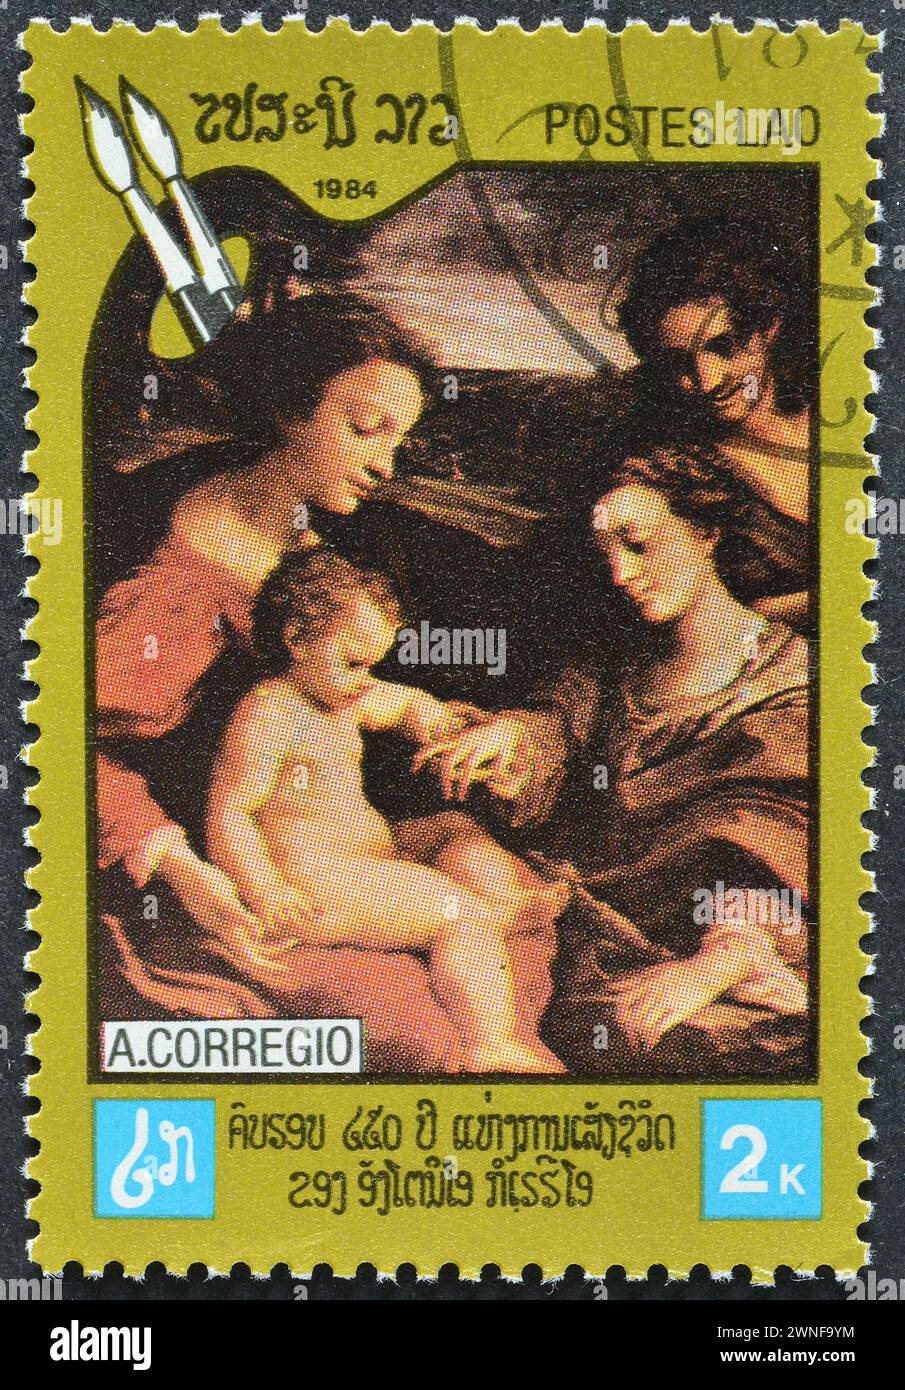 Gestempelte Briefmarke von Laos, die das Gemälde Mystische Heirat der Heiligen Katharina von Alexandria zeigt, um 1984. Stockfoto